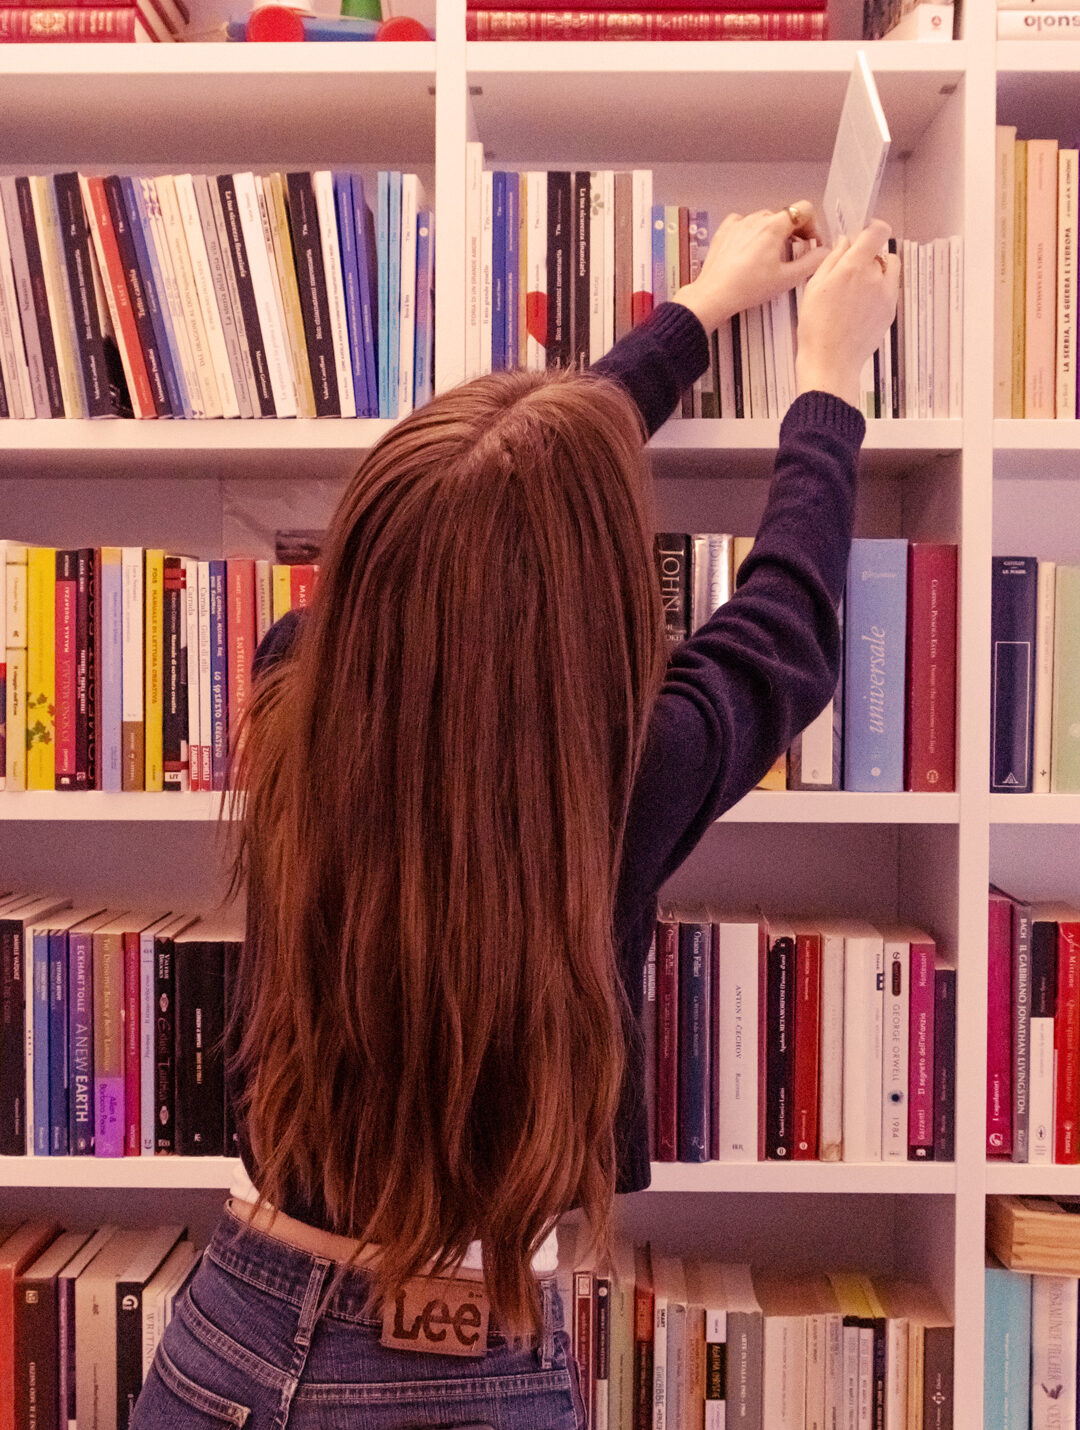 alt="ragazza di spalle prende un libro da una libreria"